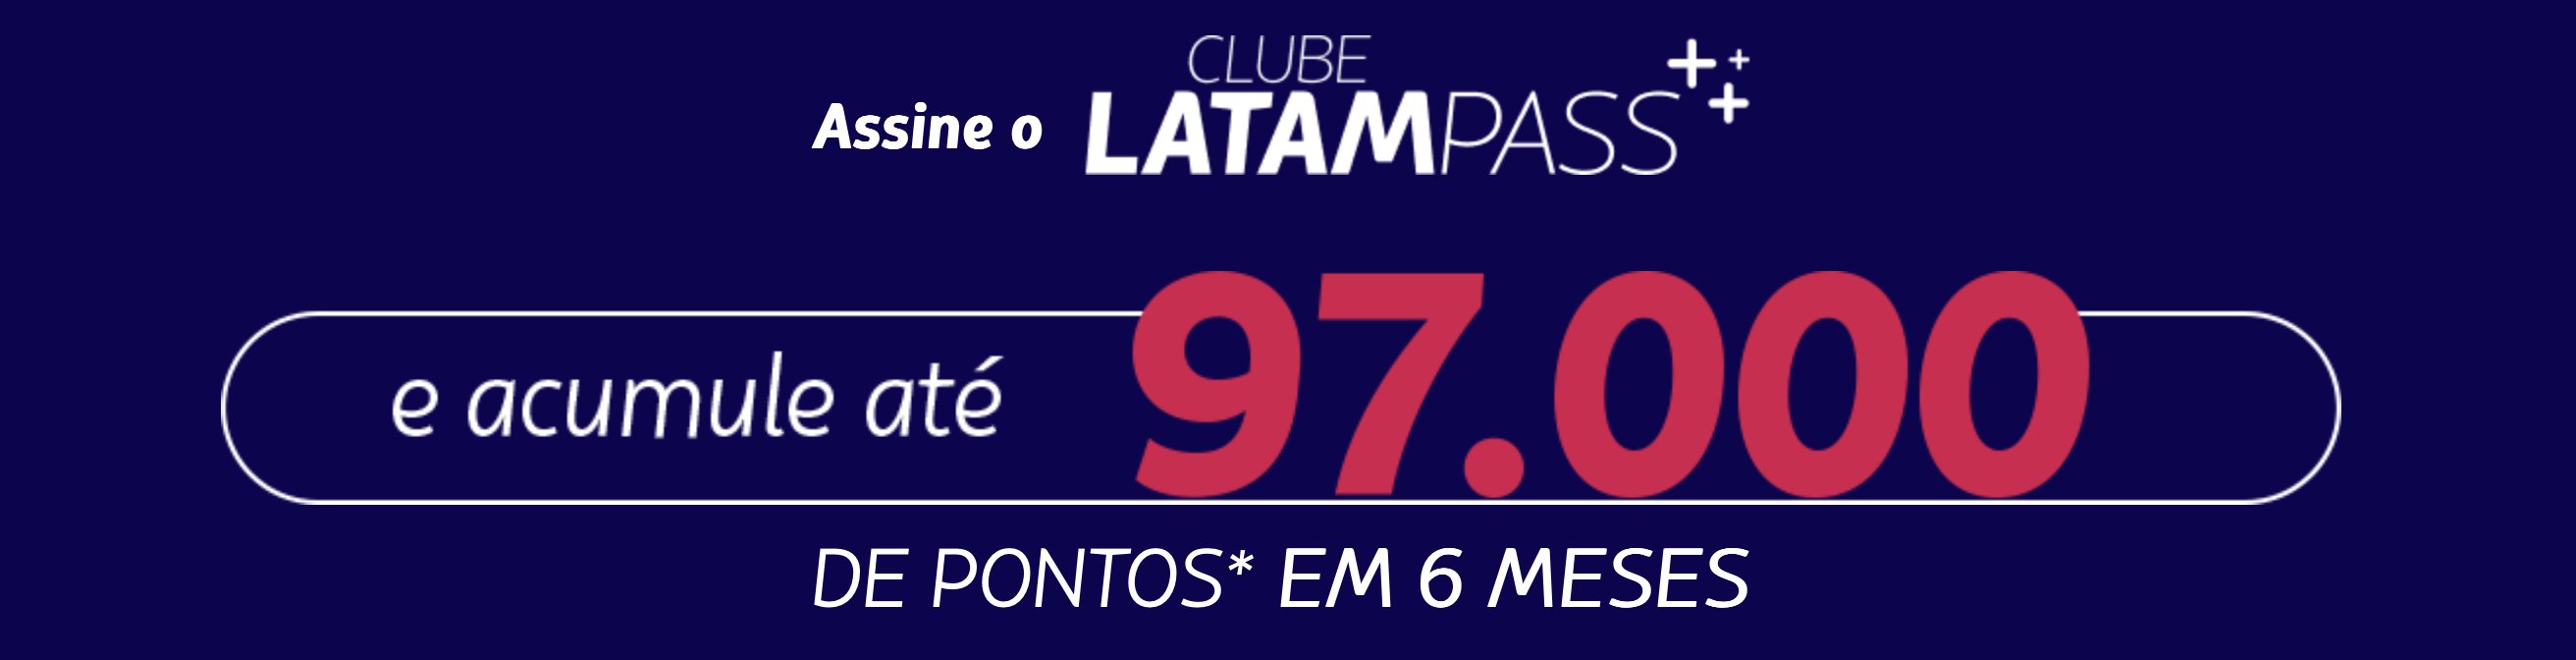 LATAM Pass clube